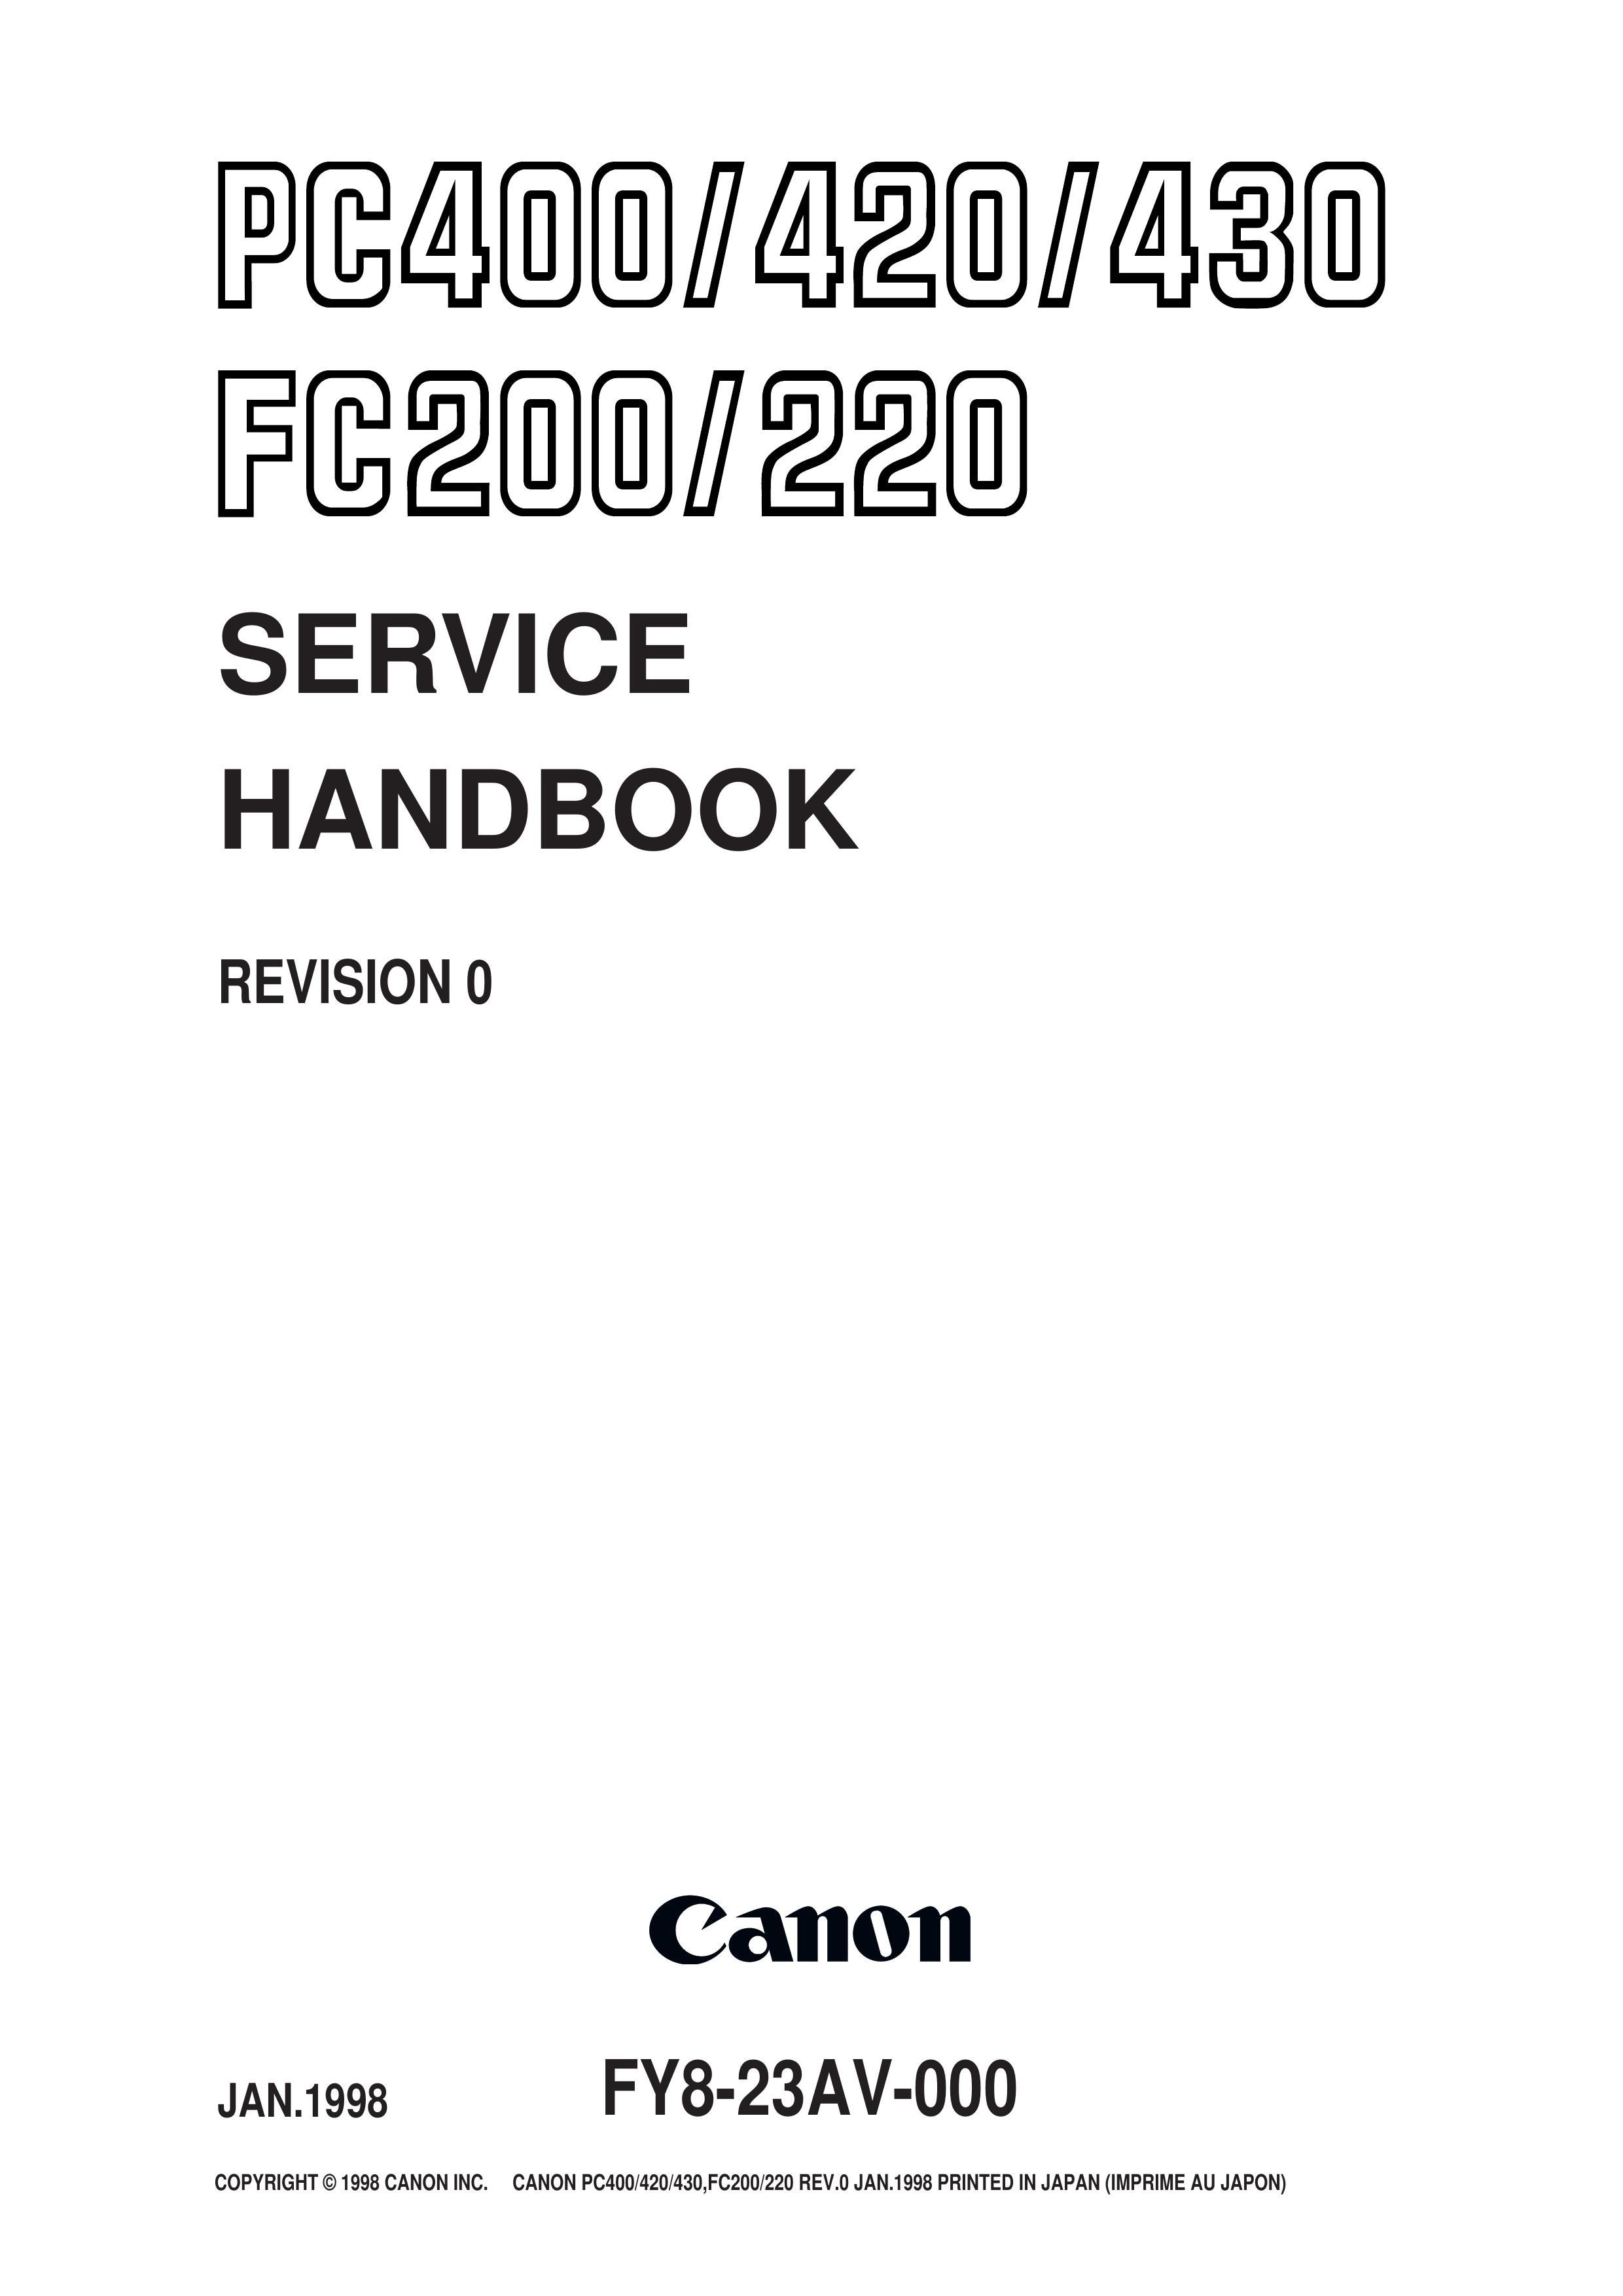 Canon FY8-23AV-000 Photo Scanner User Manual